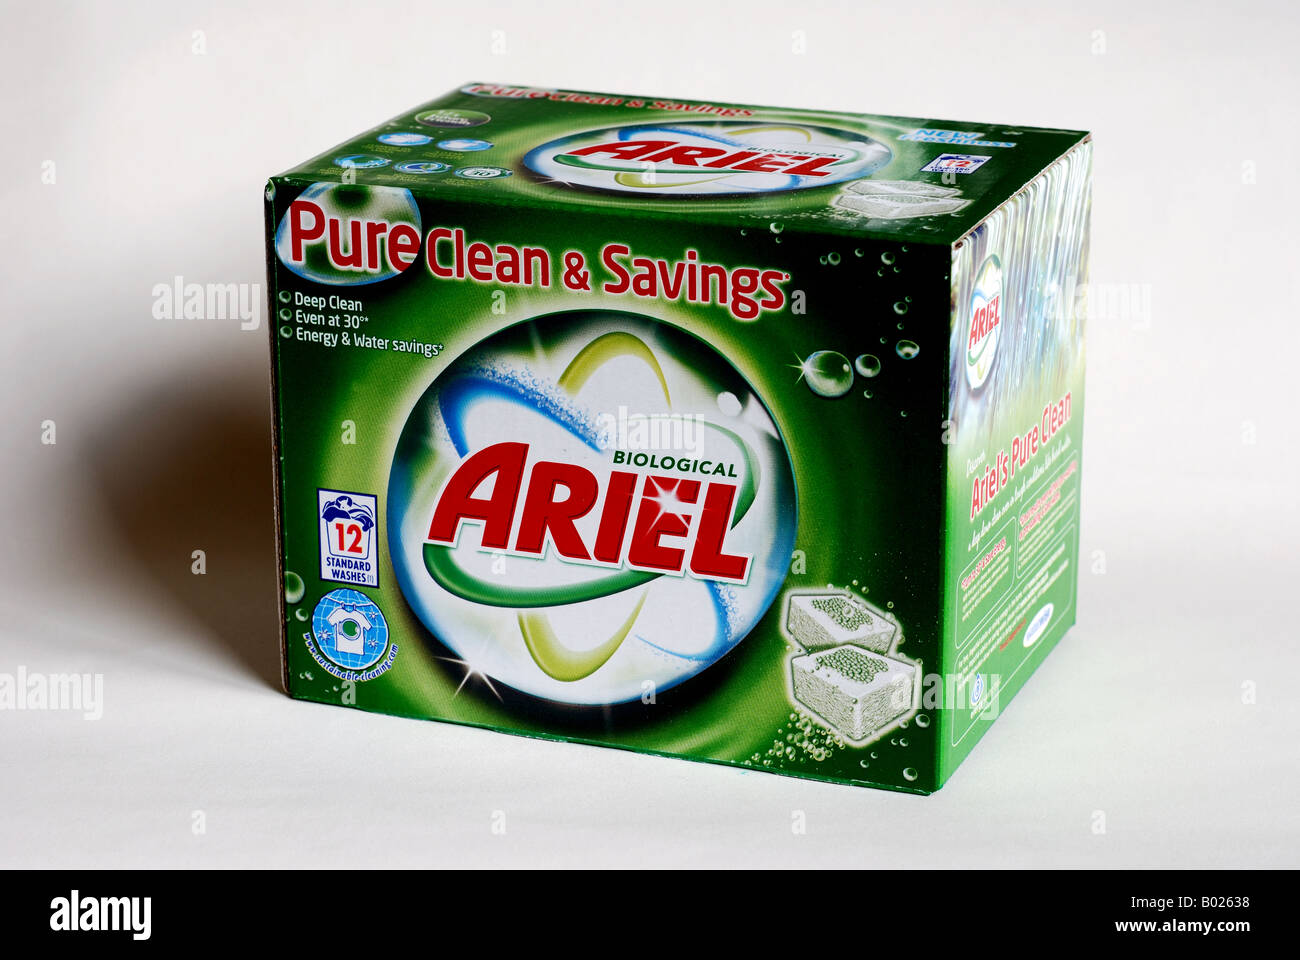 Detergente máquina todo en uno Ariel caja 18 lavados